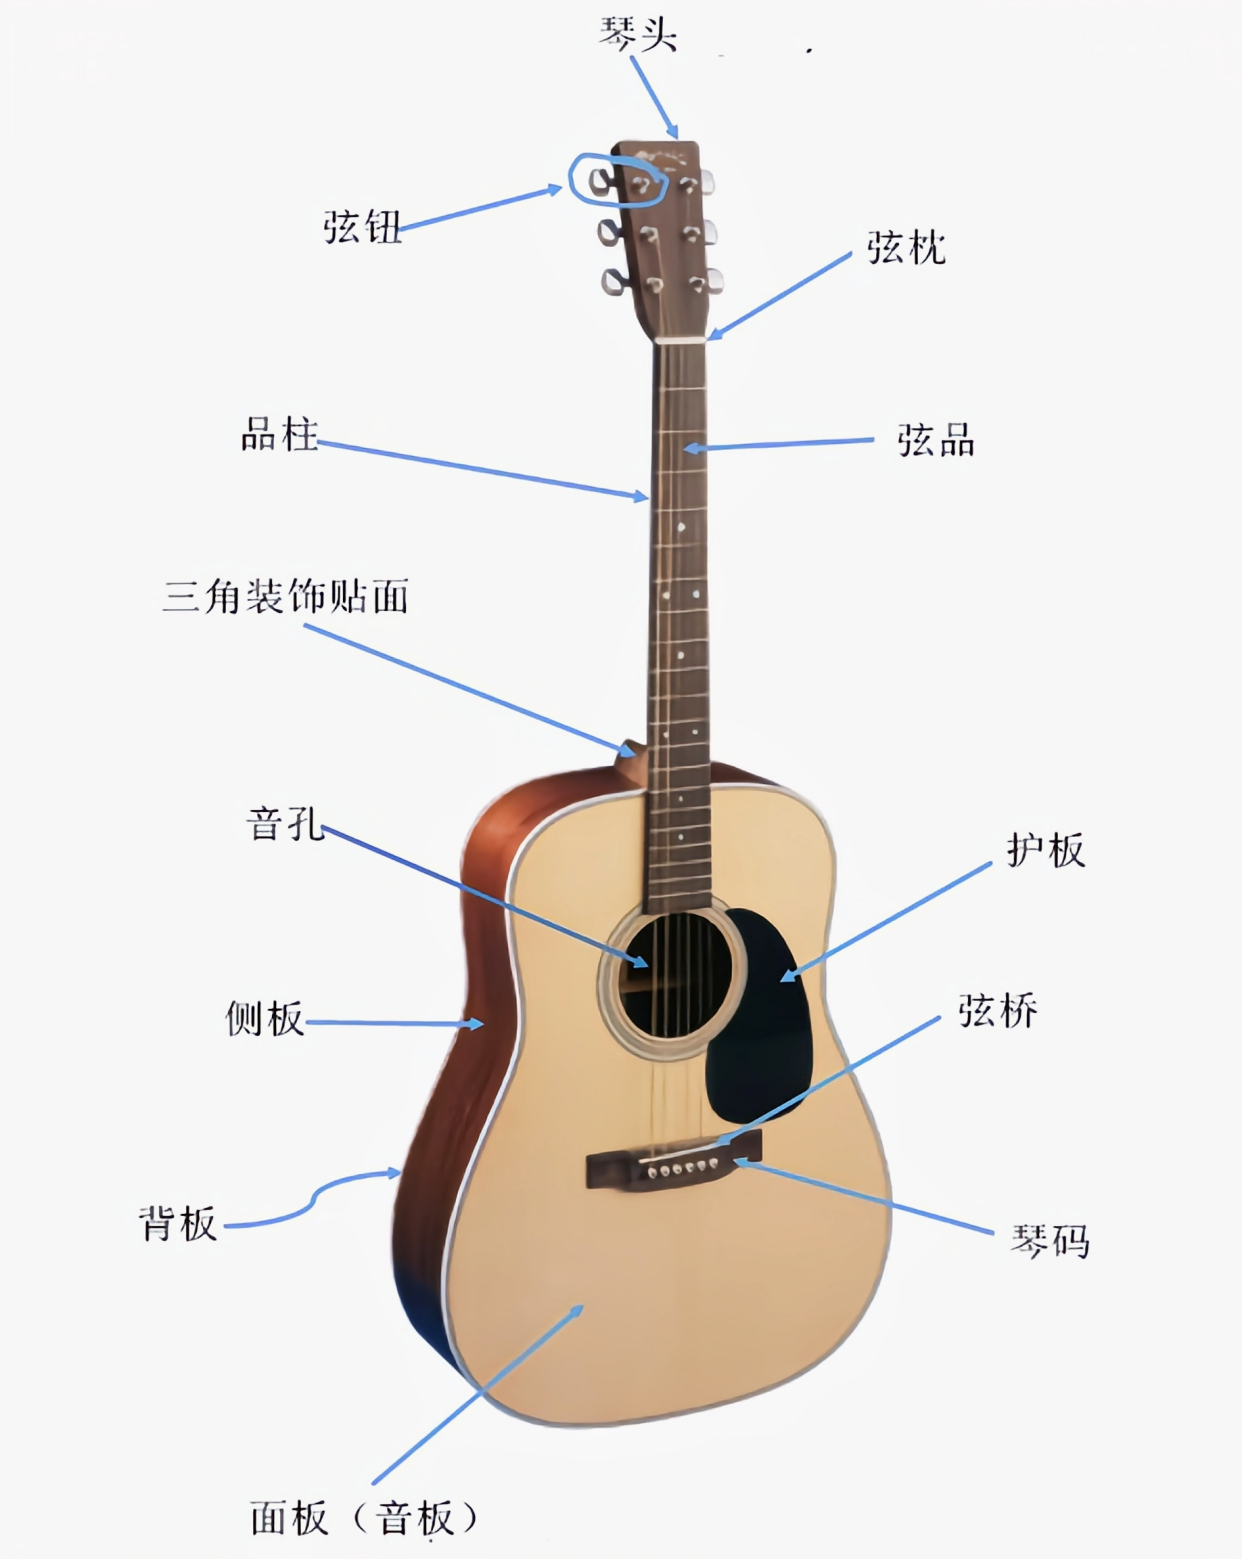 吉他的构造图解及其作用